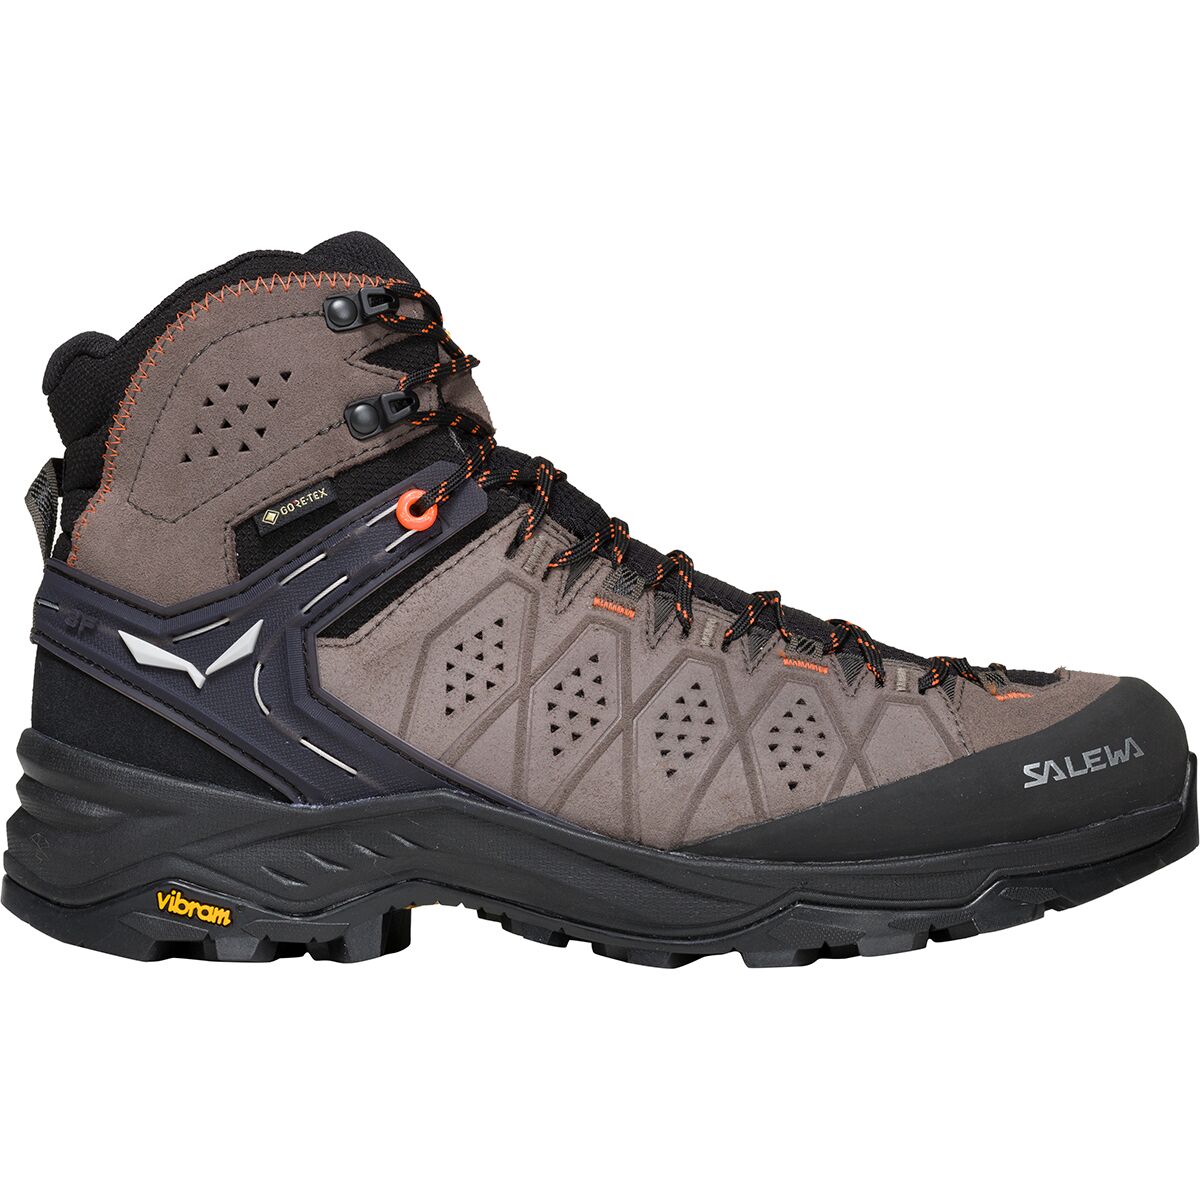 Salewa Alp Trainer 2 Mid GTX Hiking Boot - Men's